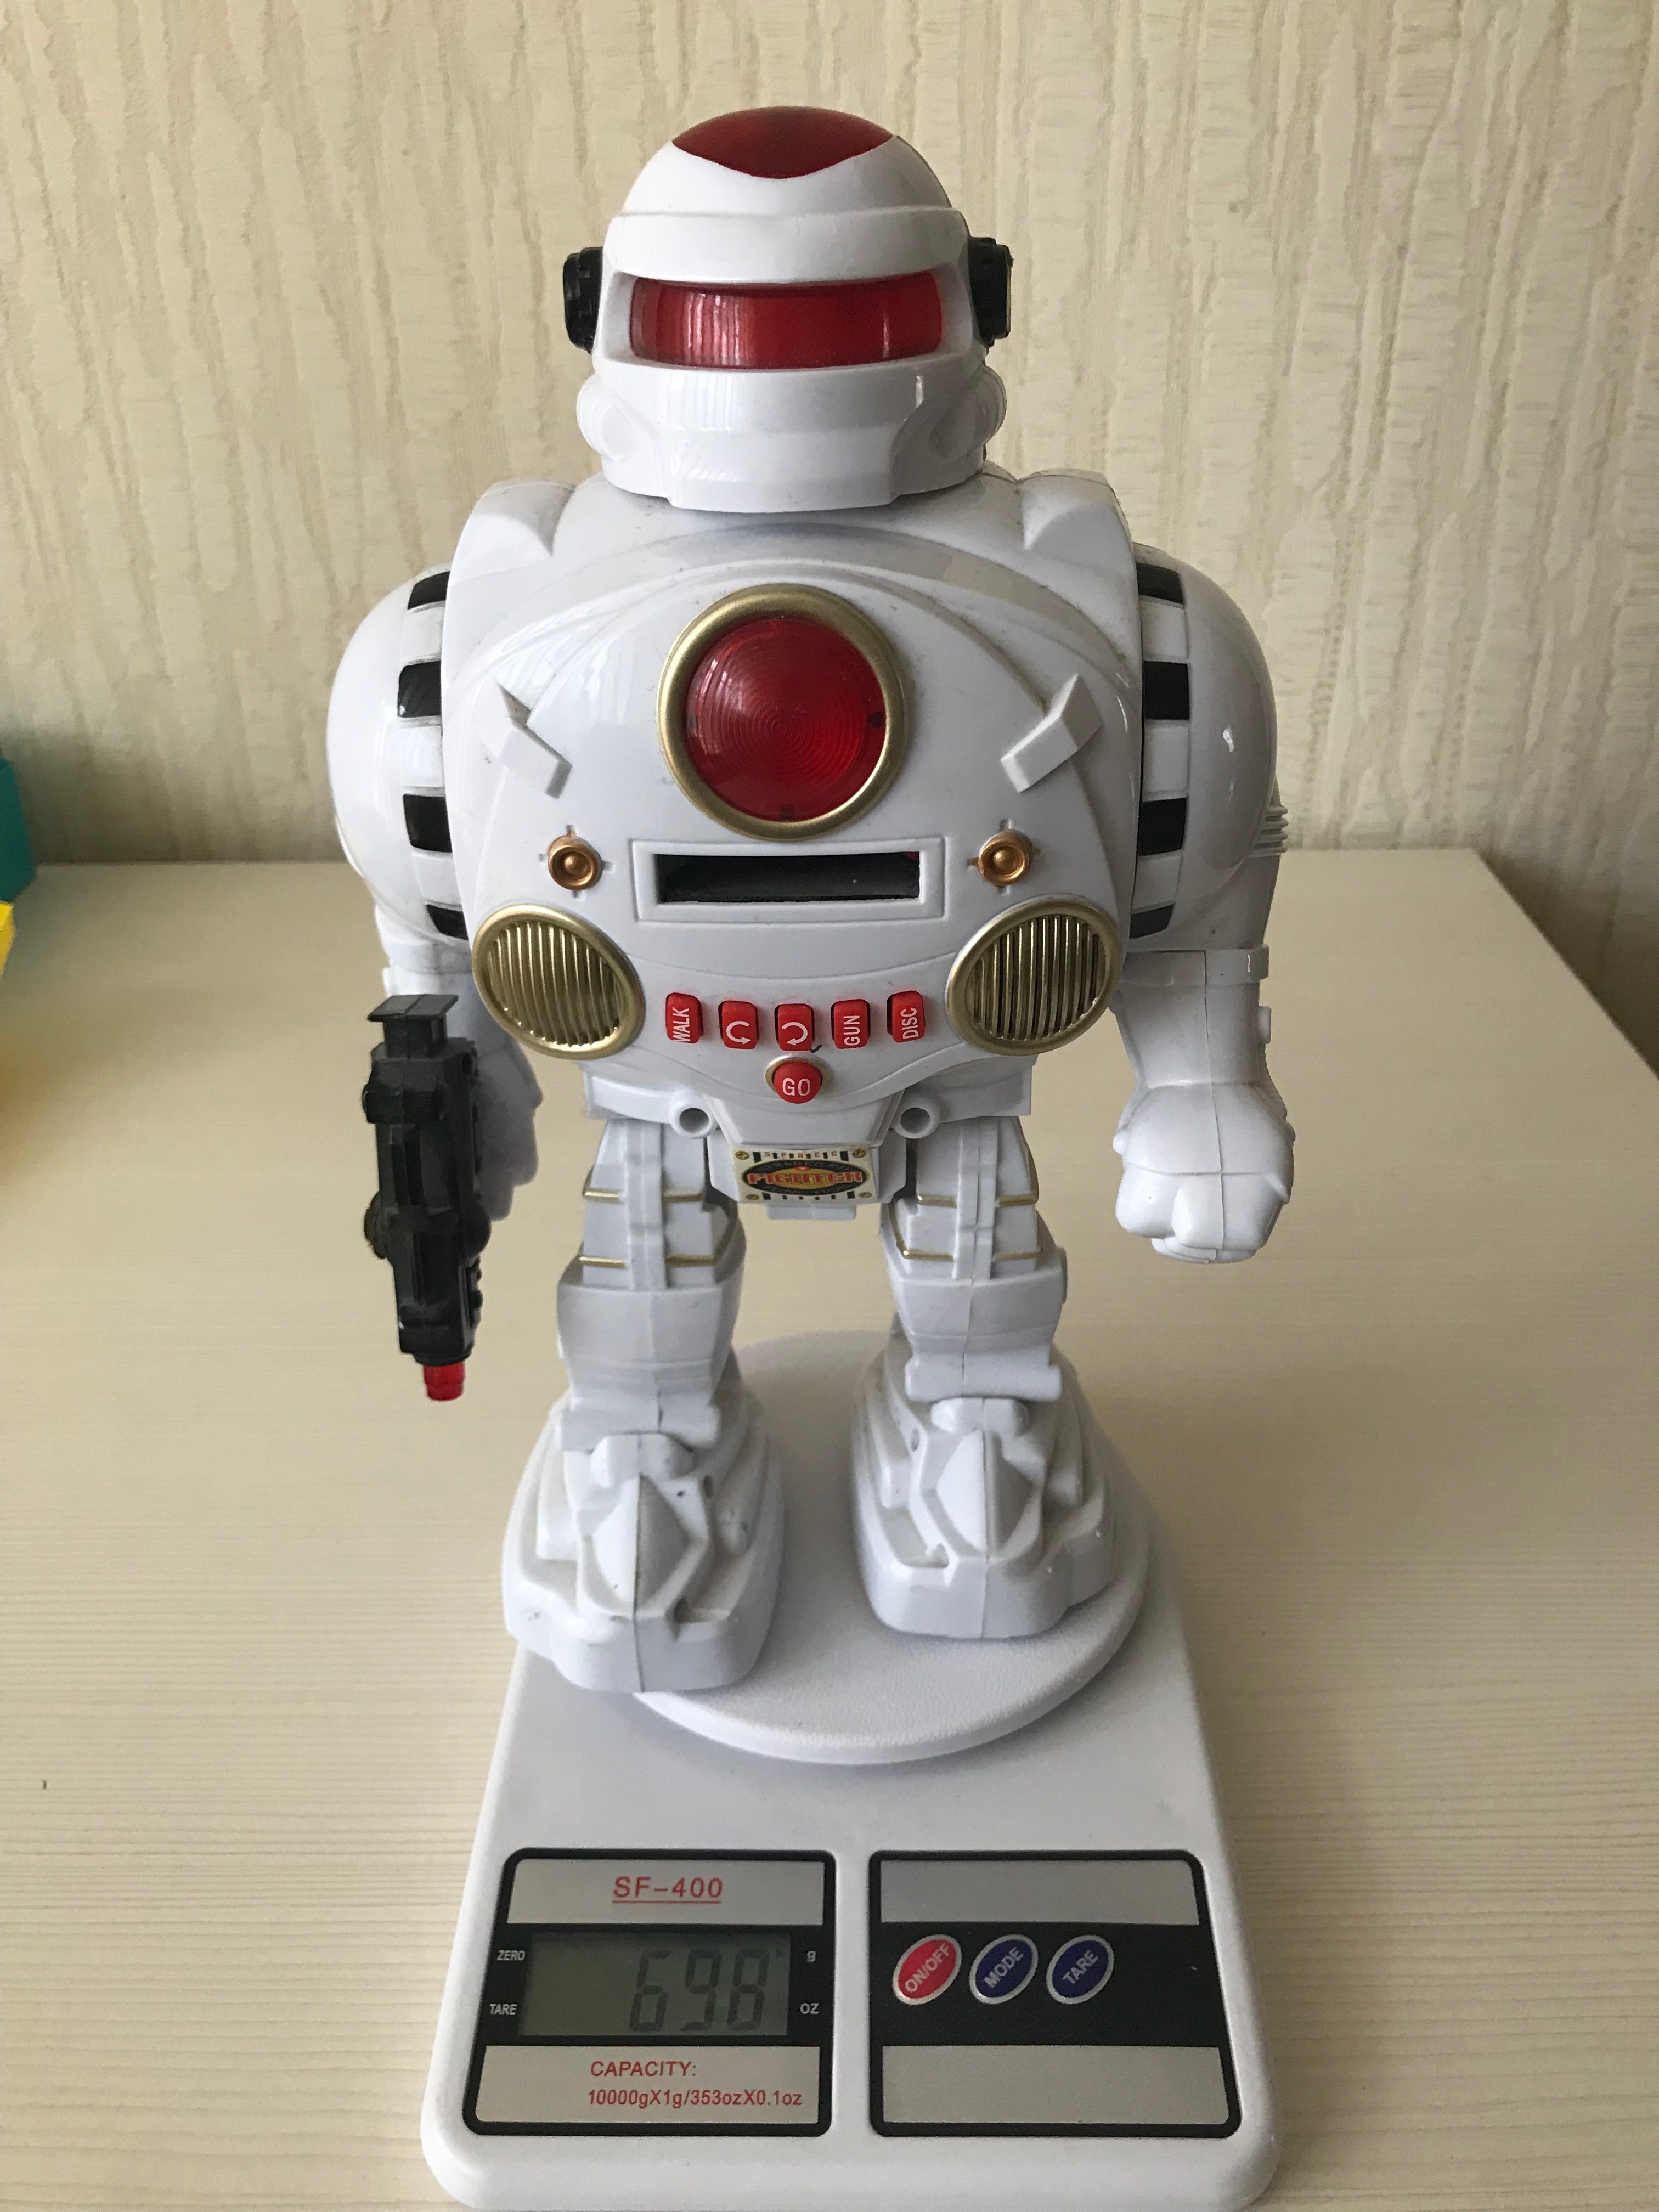 Berapa berat robot ini?